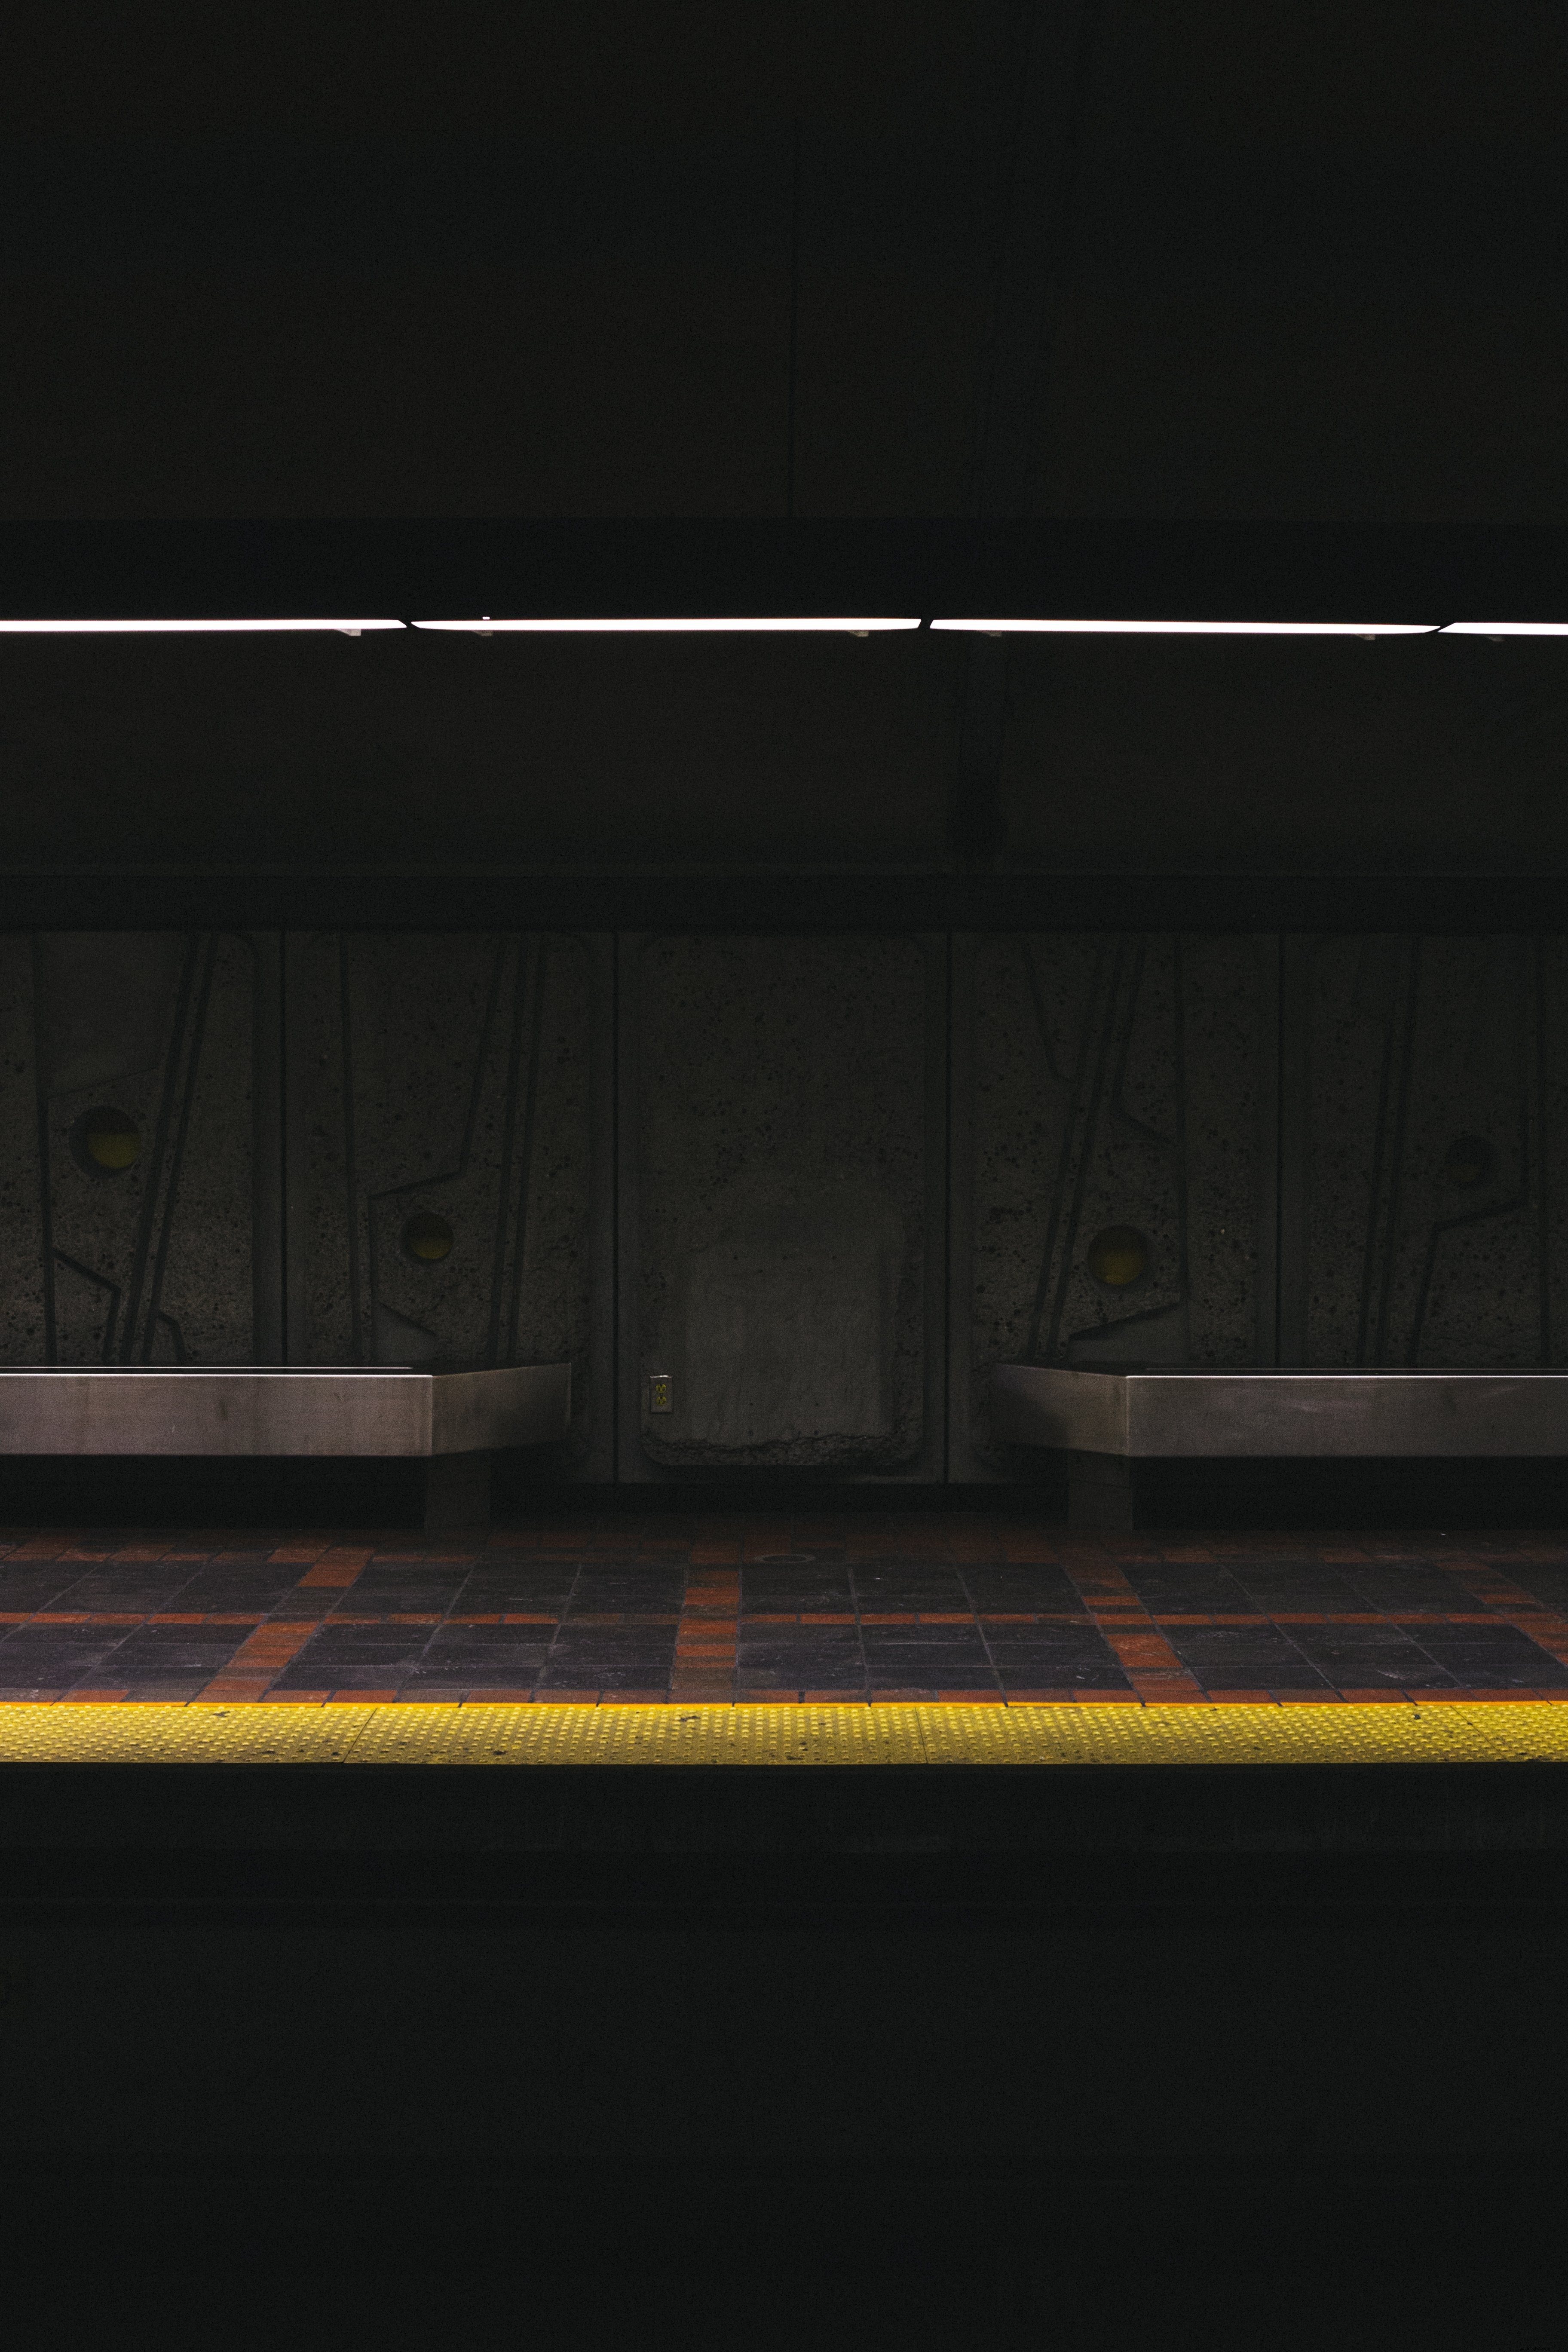 地下鉄のプラットフォーム写真のローライト 